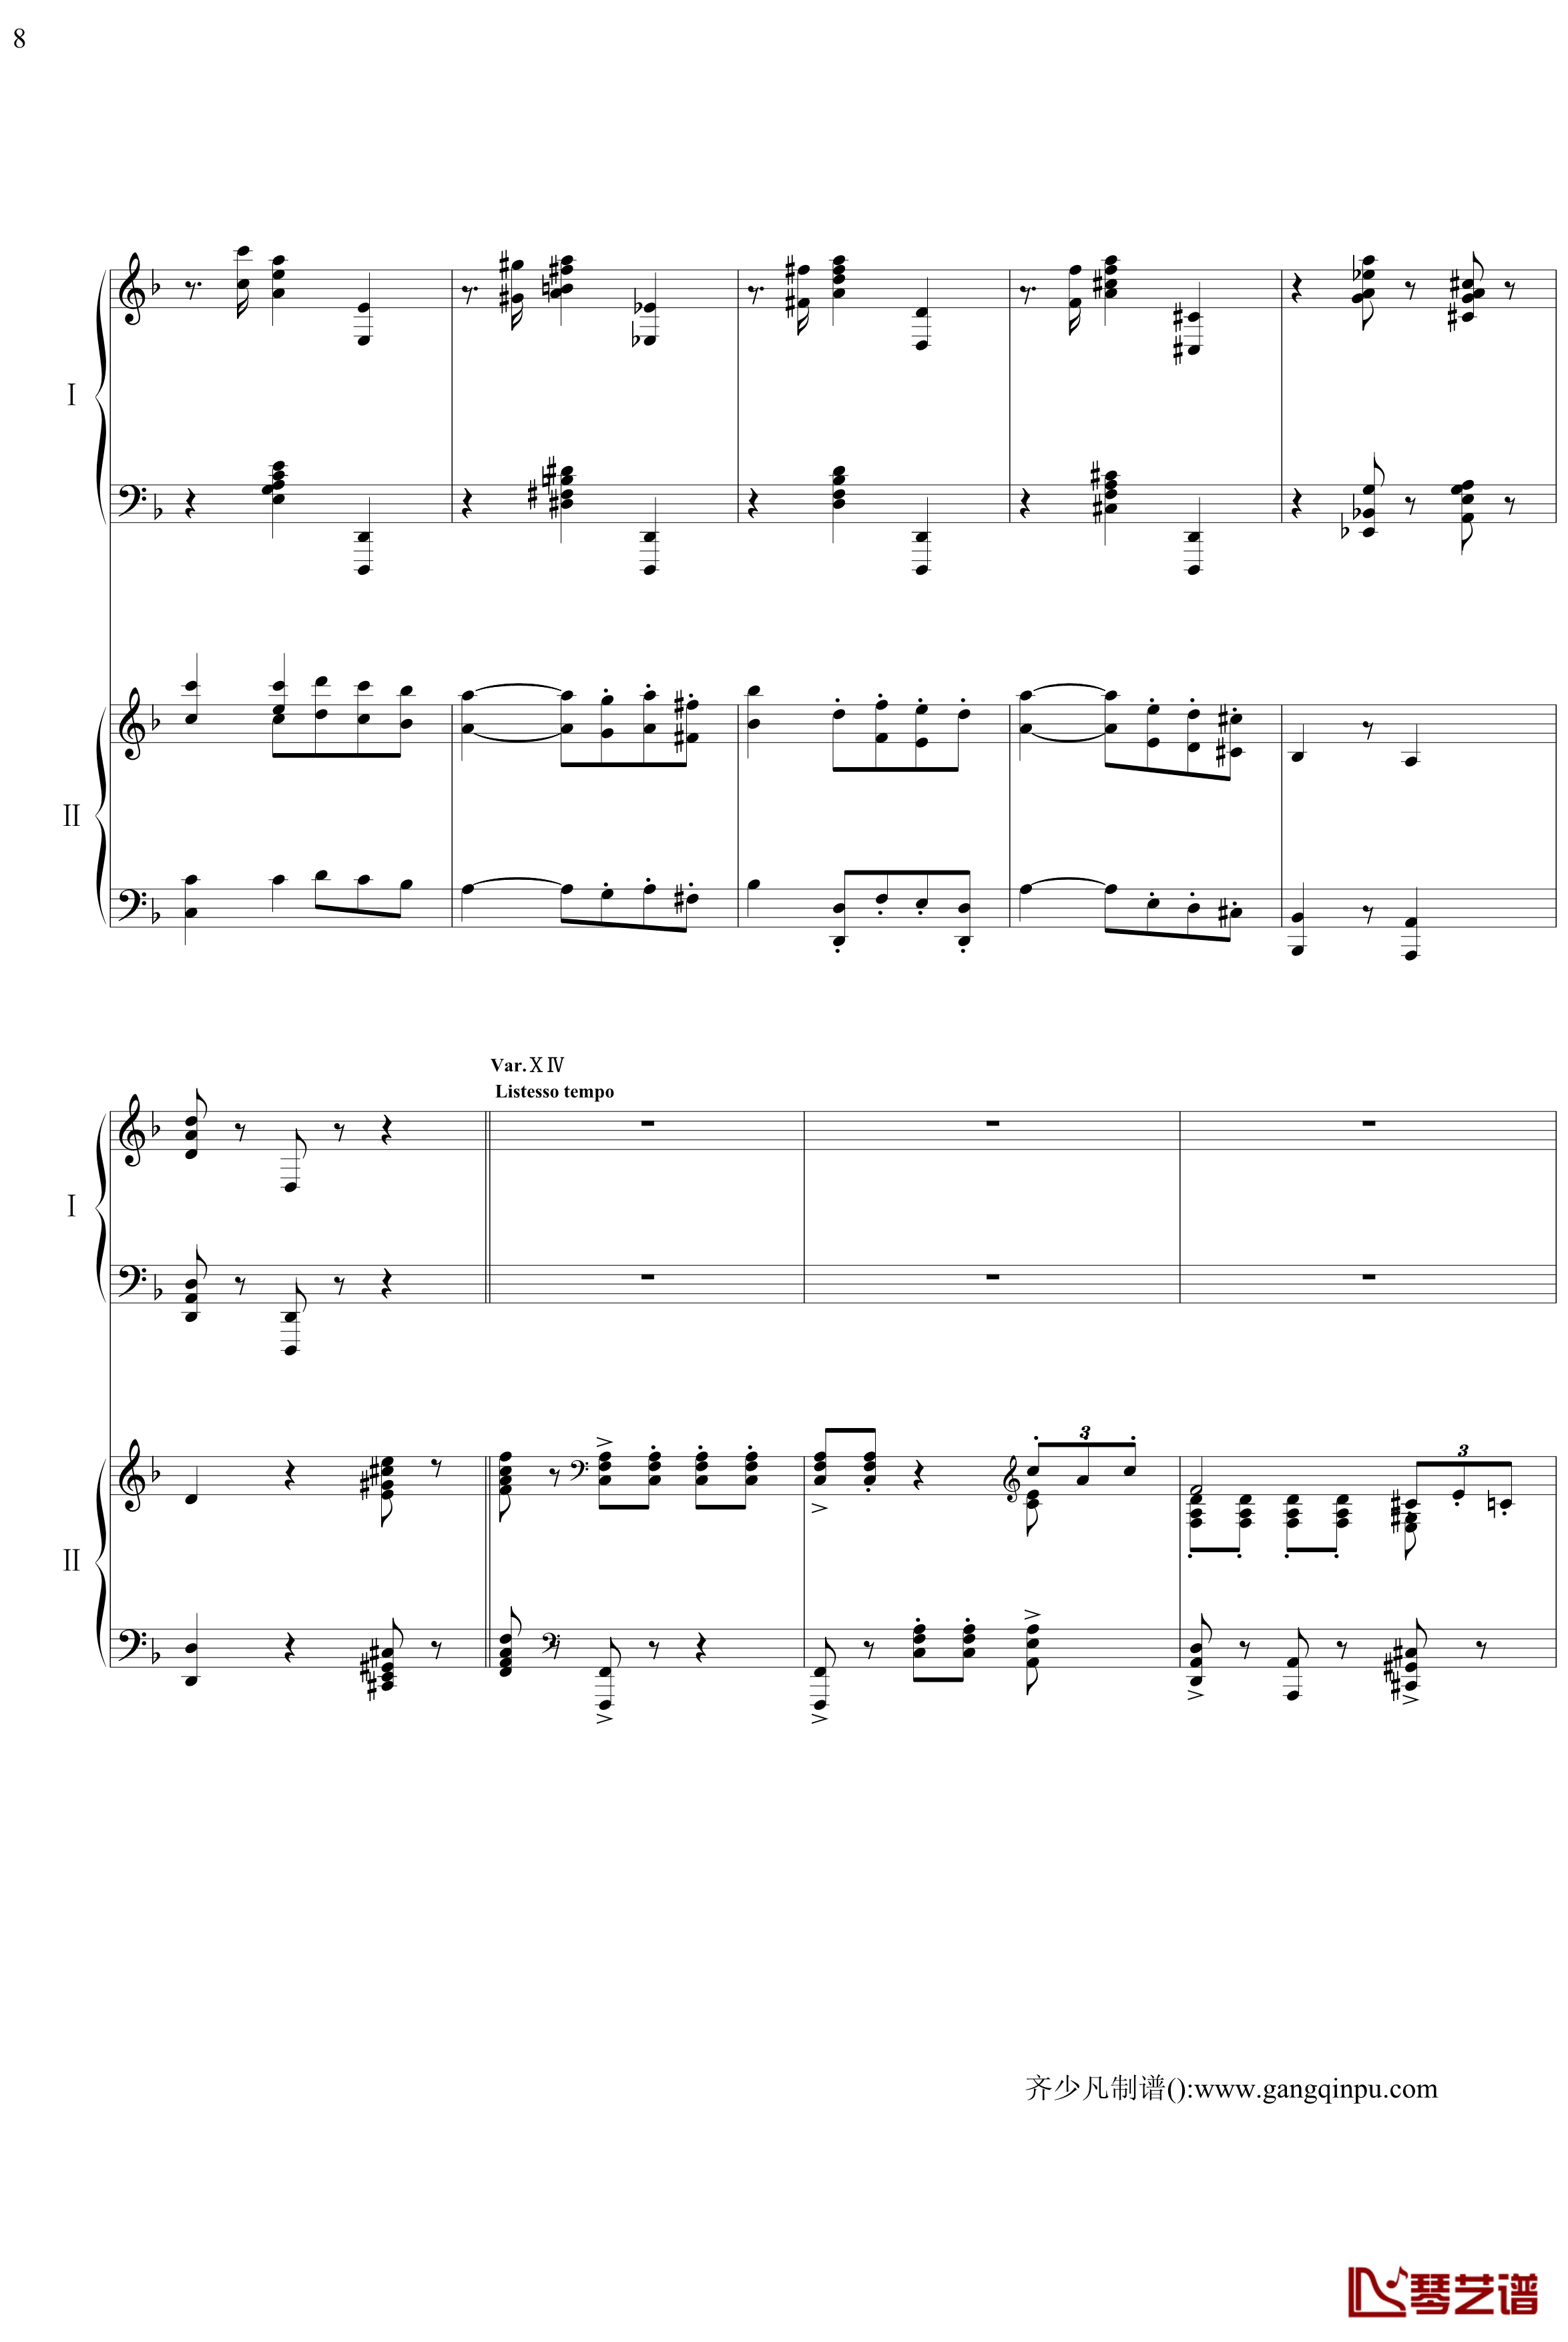 帕格尼尼主题狂想曲钢琴谱-11~18变奏-拉赫马尼若夫8